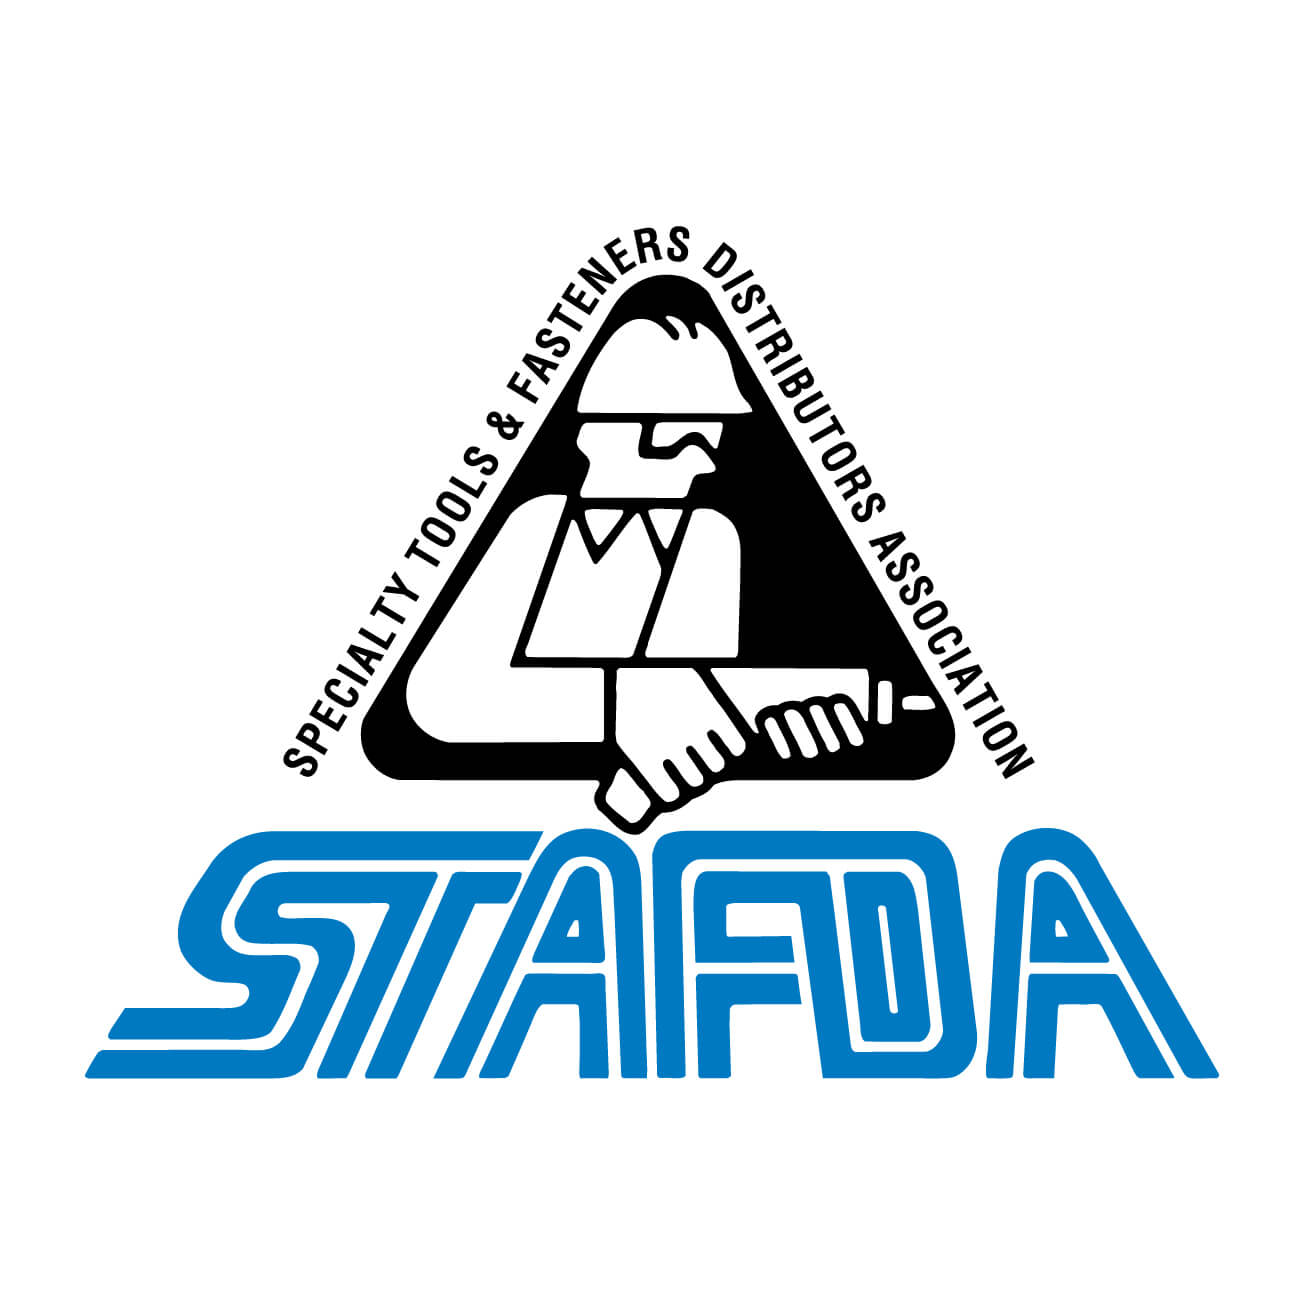 2017 STAFDA Convention (Austin, TX)